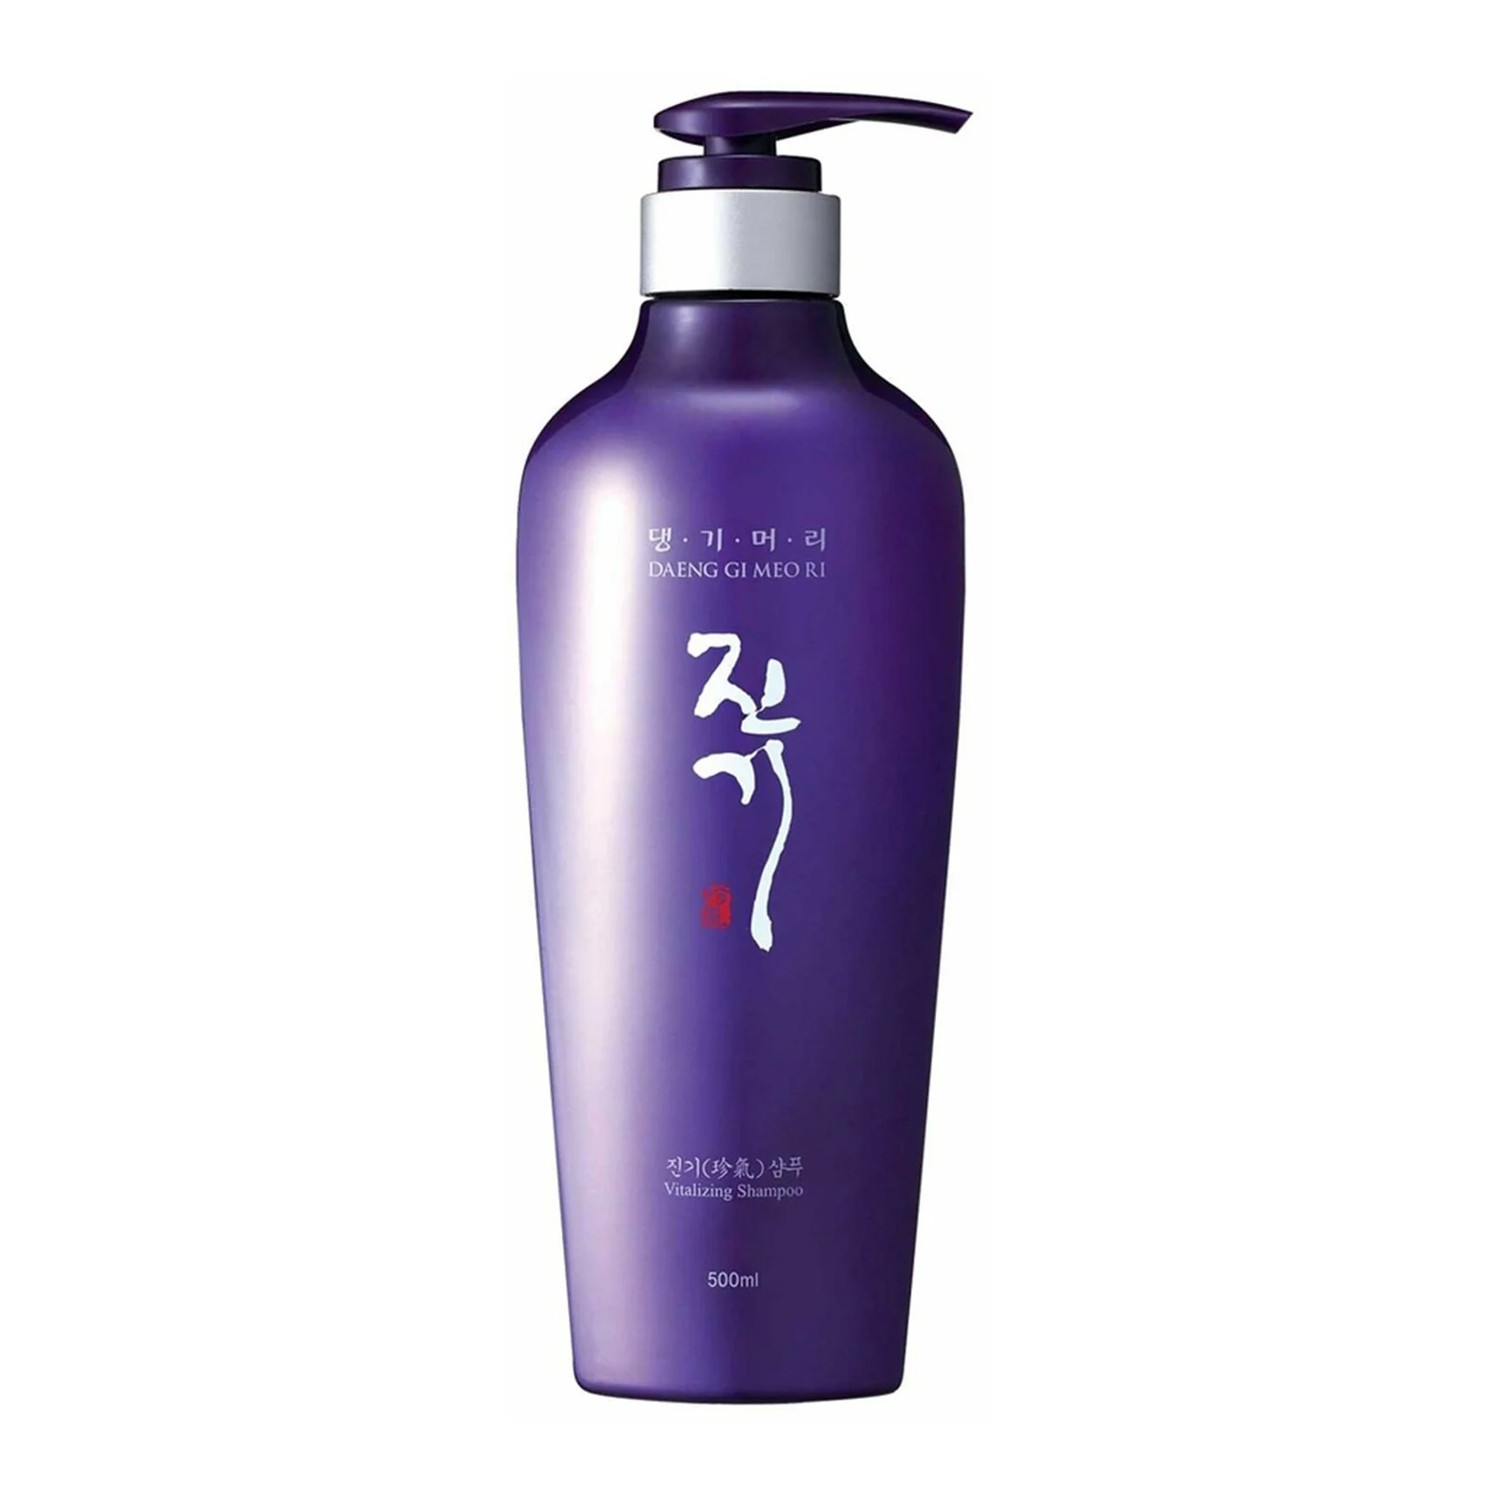 Daeng Gi Meo Ri Відновлюючий шампунь для ослабленого волосся